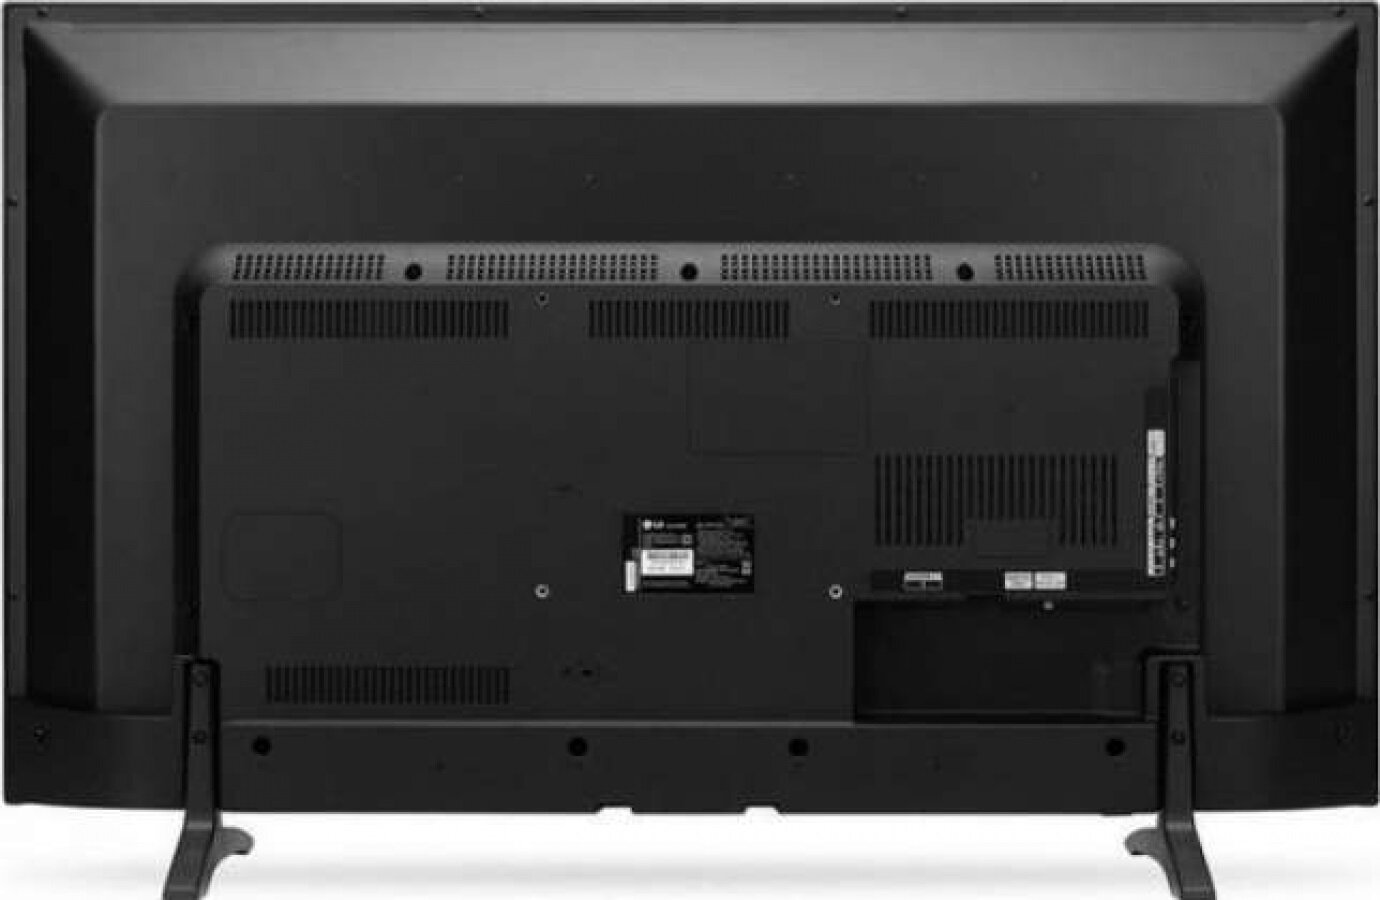 LG LED 43LH500T Telewizor - niskie ceny i opinie w Media Expert